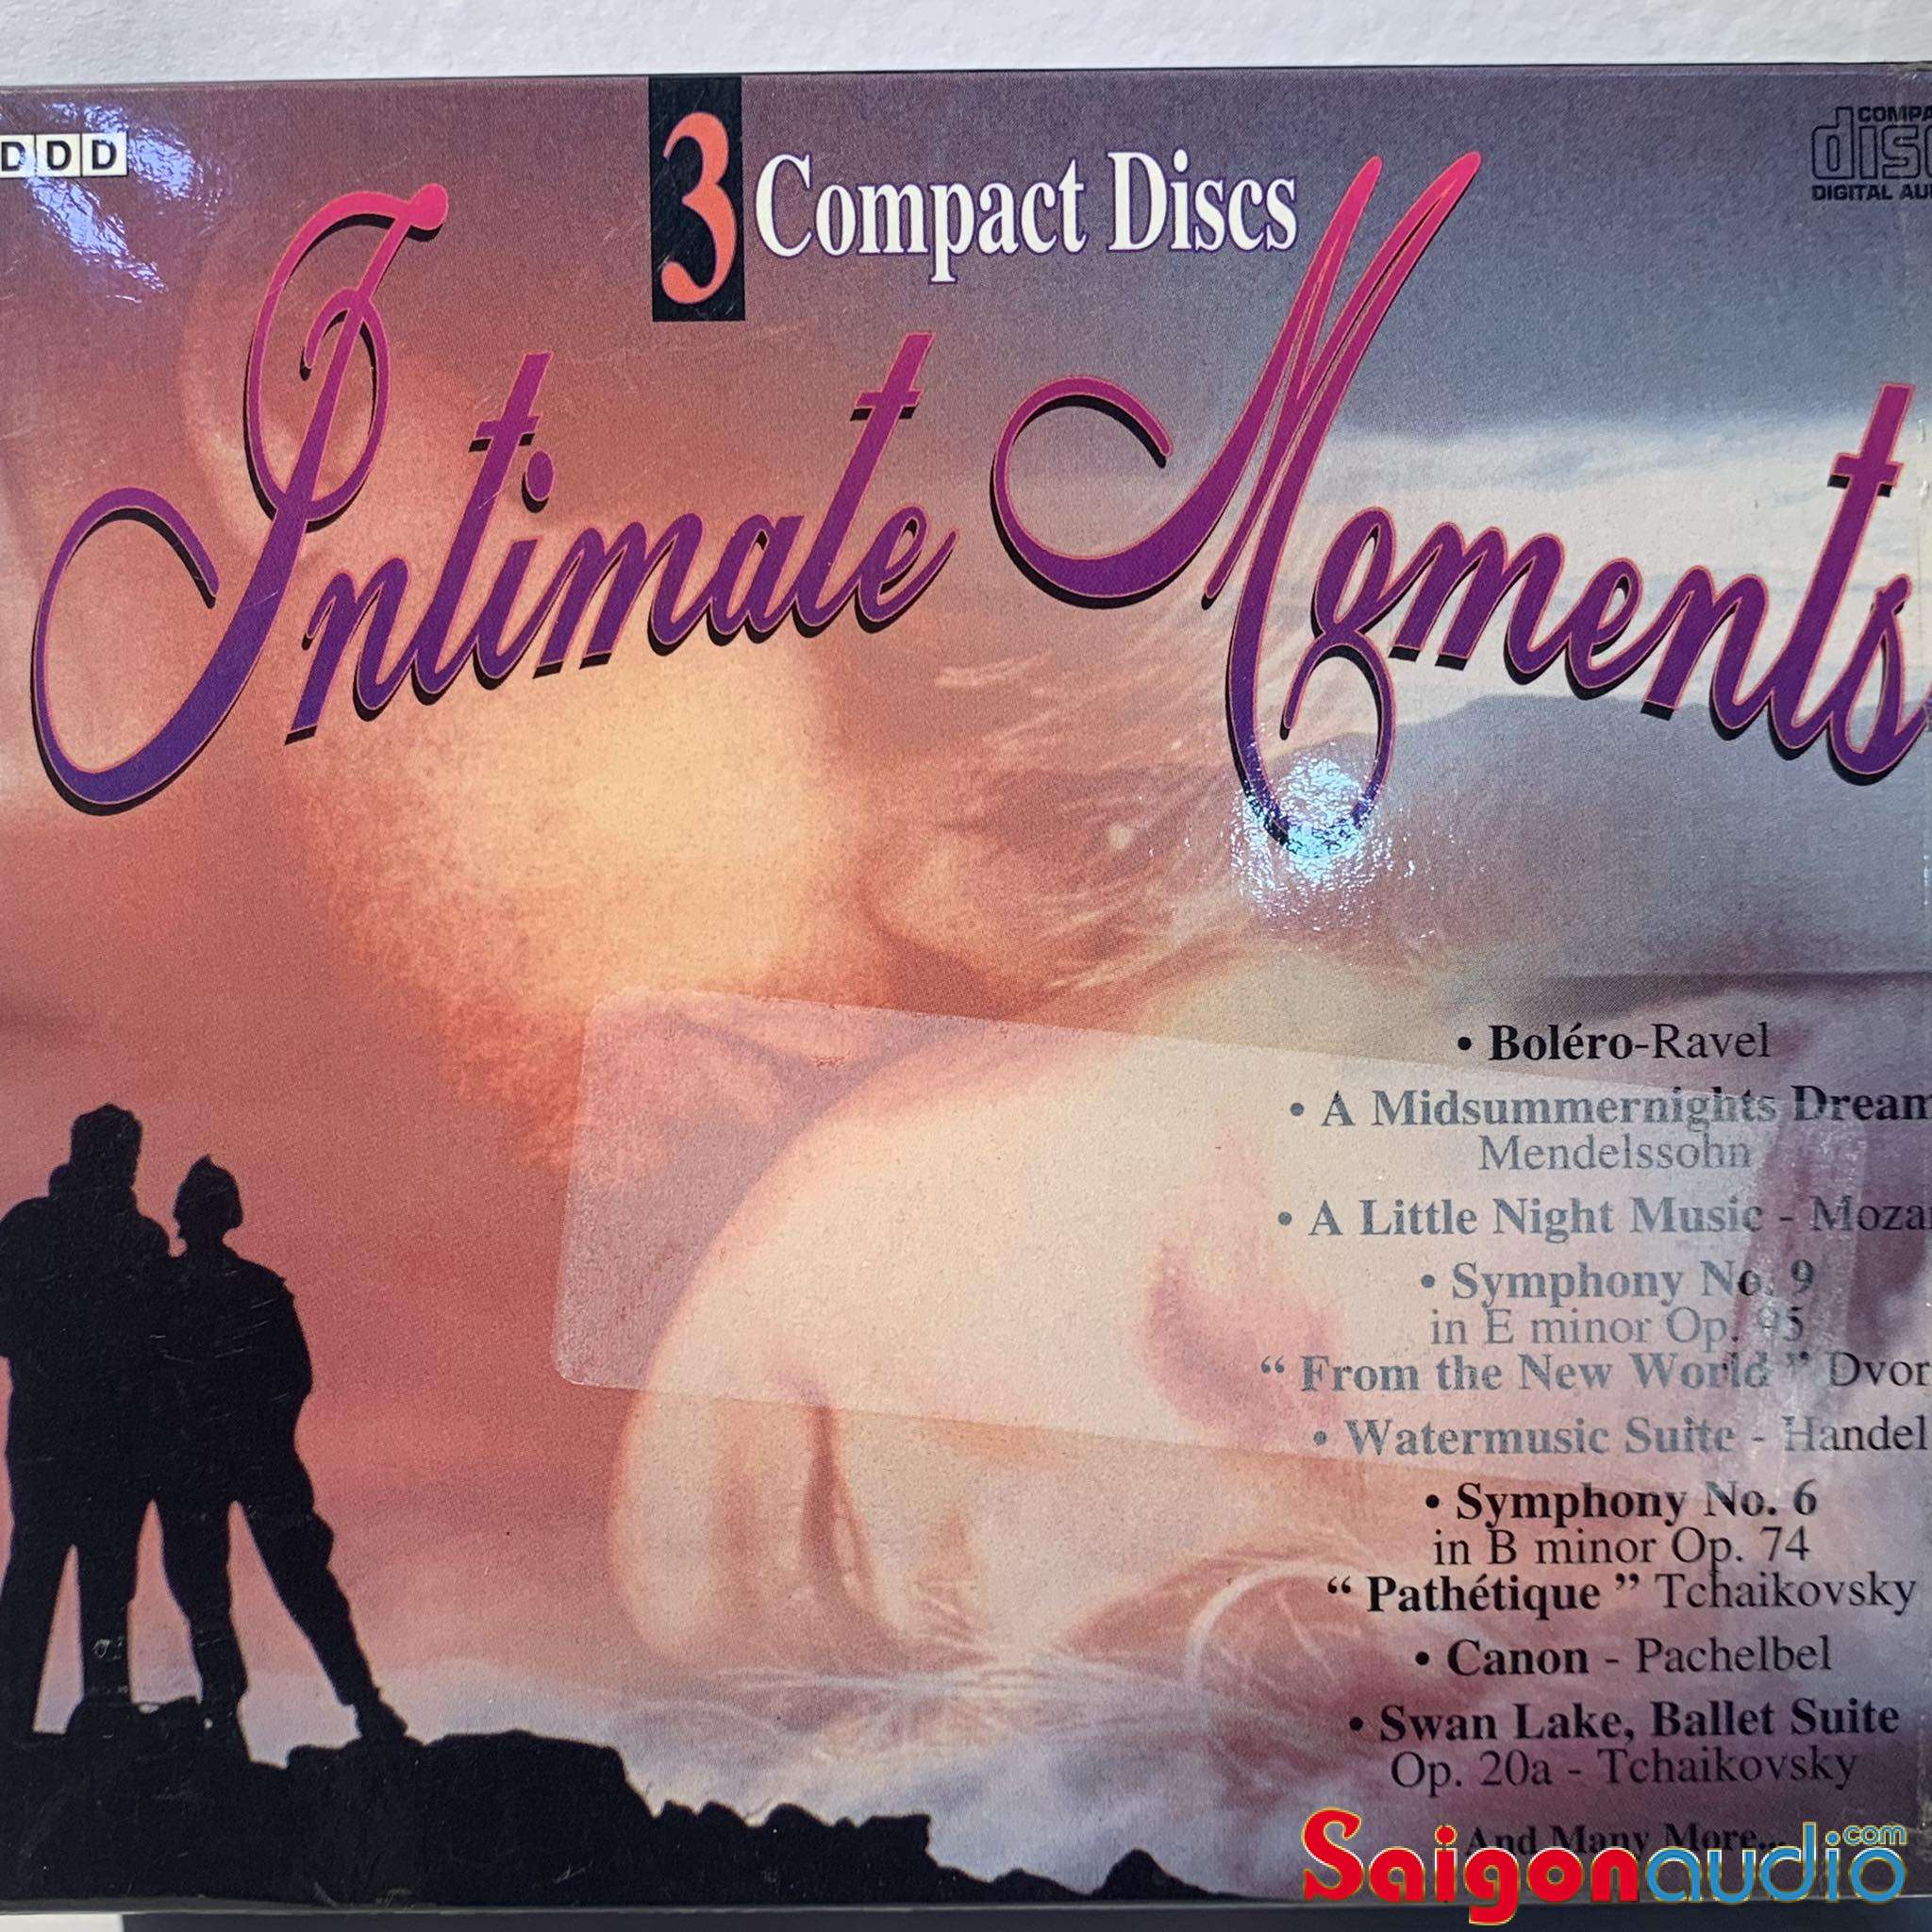 Bộ 3 CD gốc nhạc cổ điển Intimate Moments (Free ship khi mua 2 đĩa CD cùng hoặc khác loại)